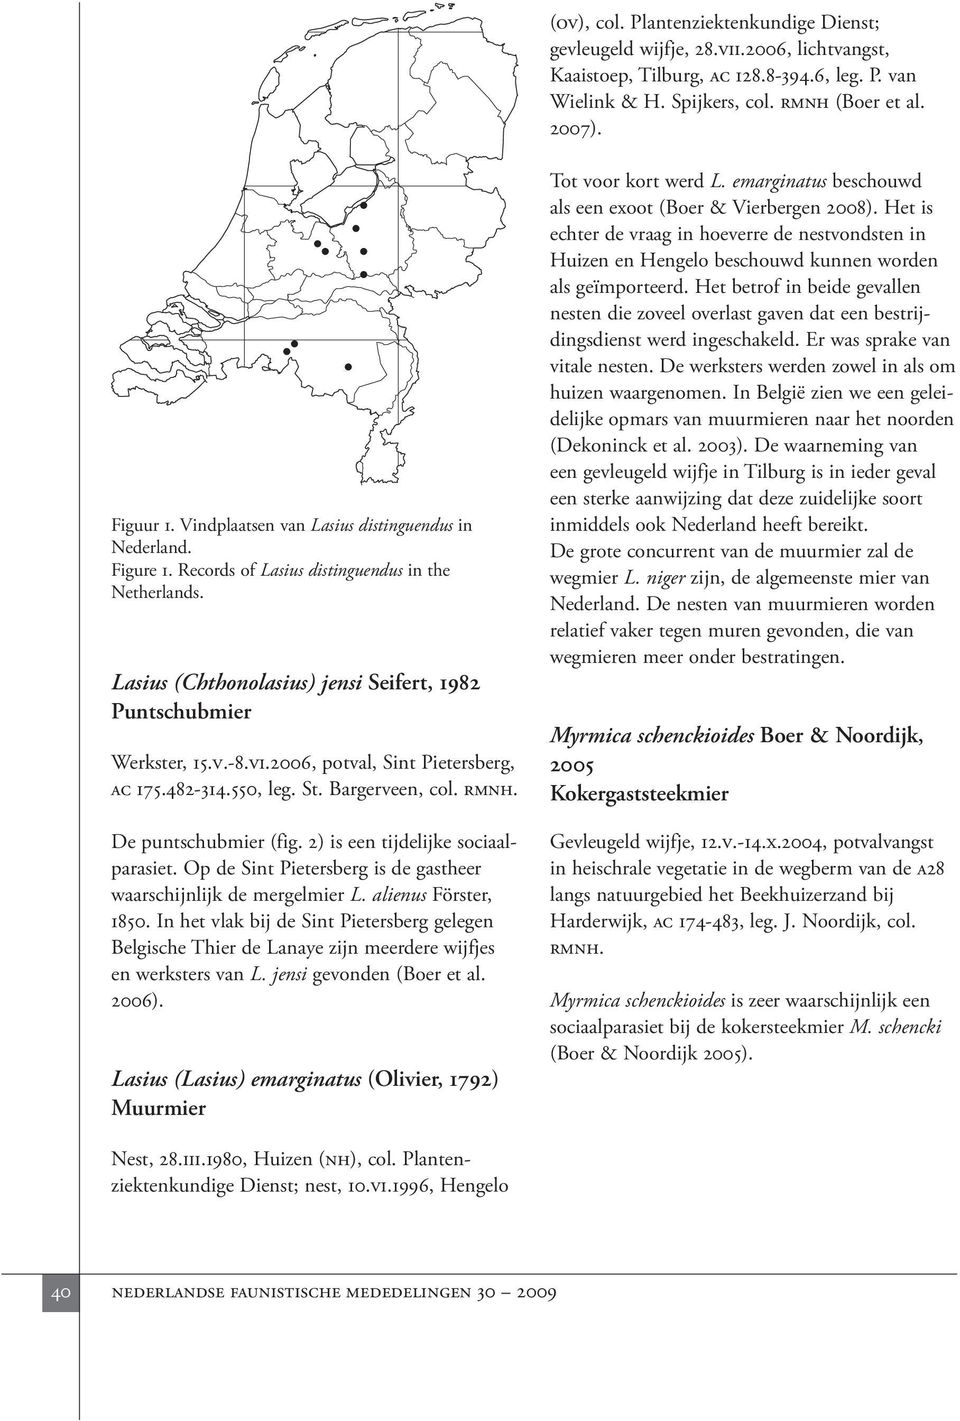 2006, potval, Sint Pietersberg, ac 175.482-314.550, leg. St. Bargerveen, col. rmnh. De puntschubmier (fig. 2) is een tijdelijke sociaalparasiet.